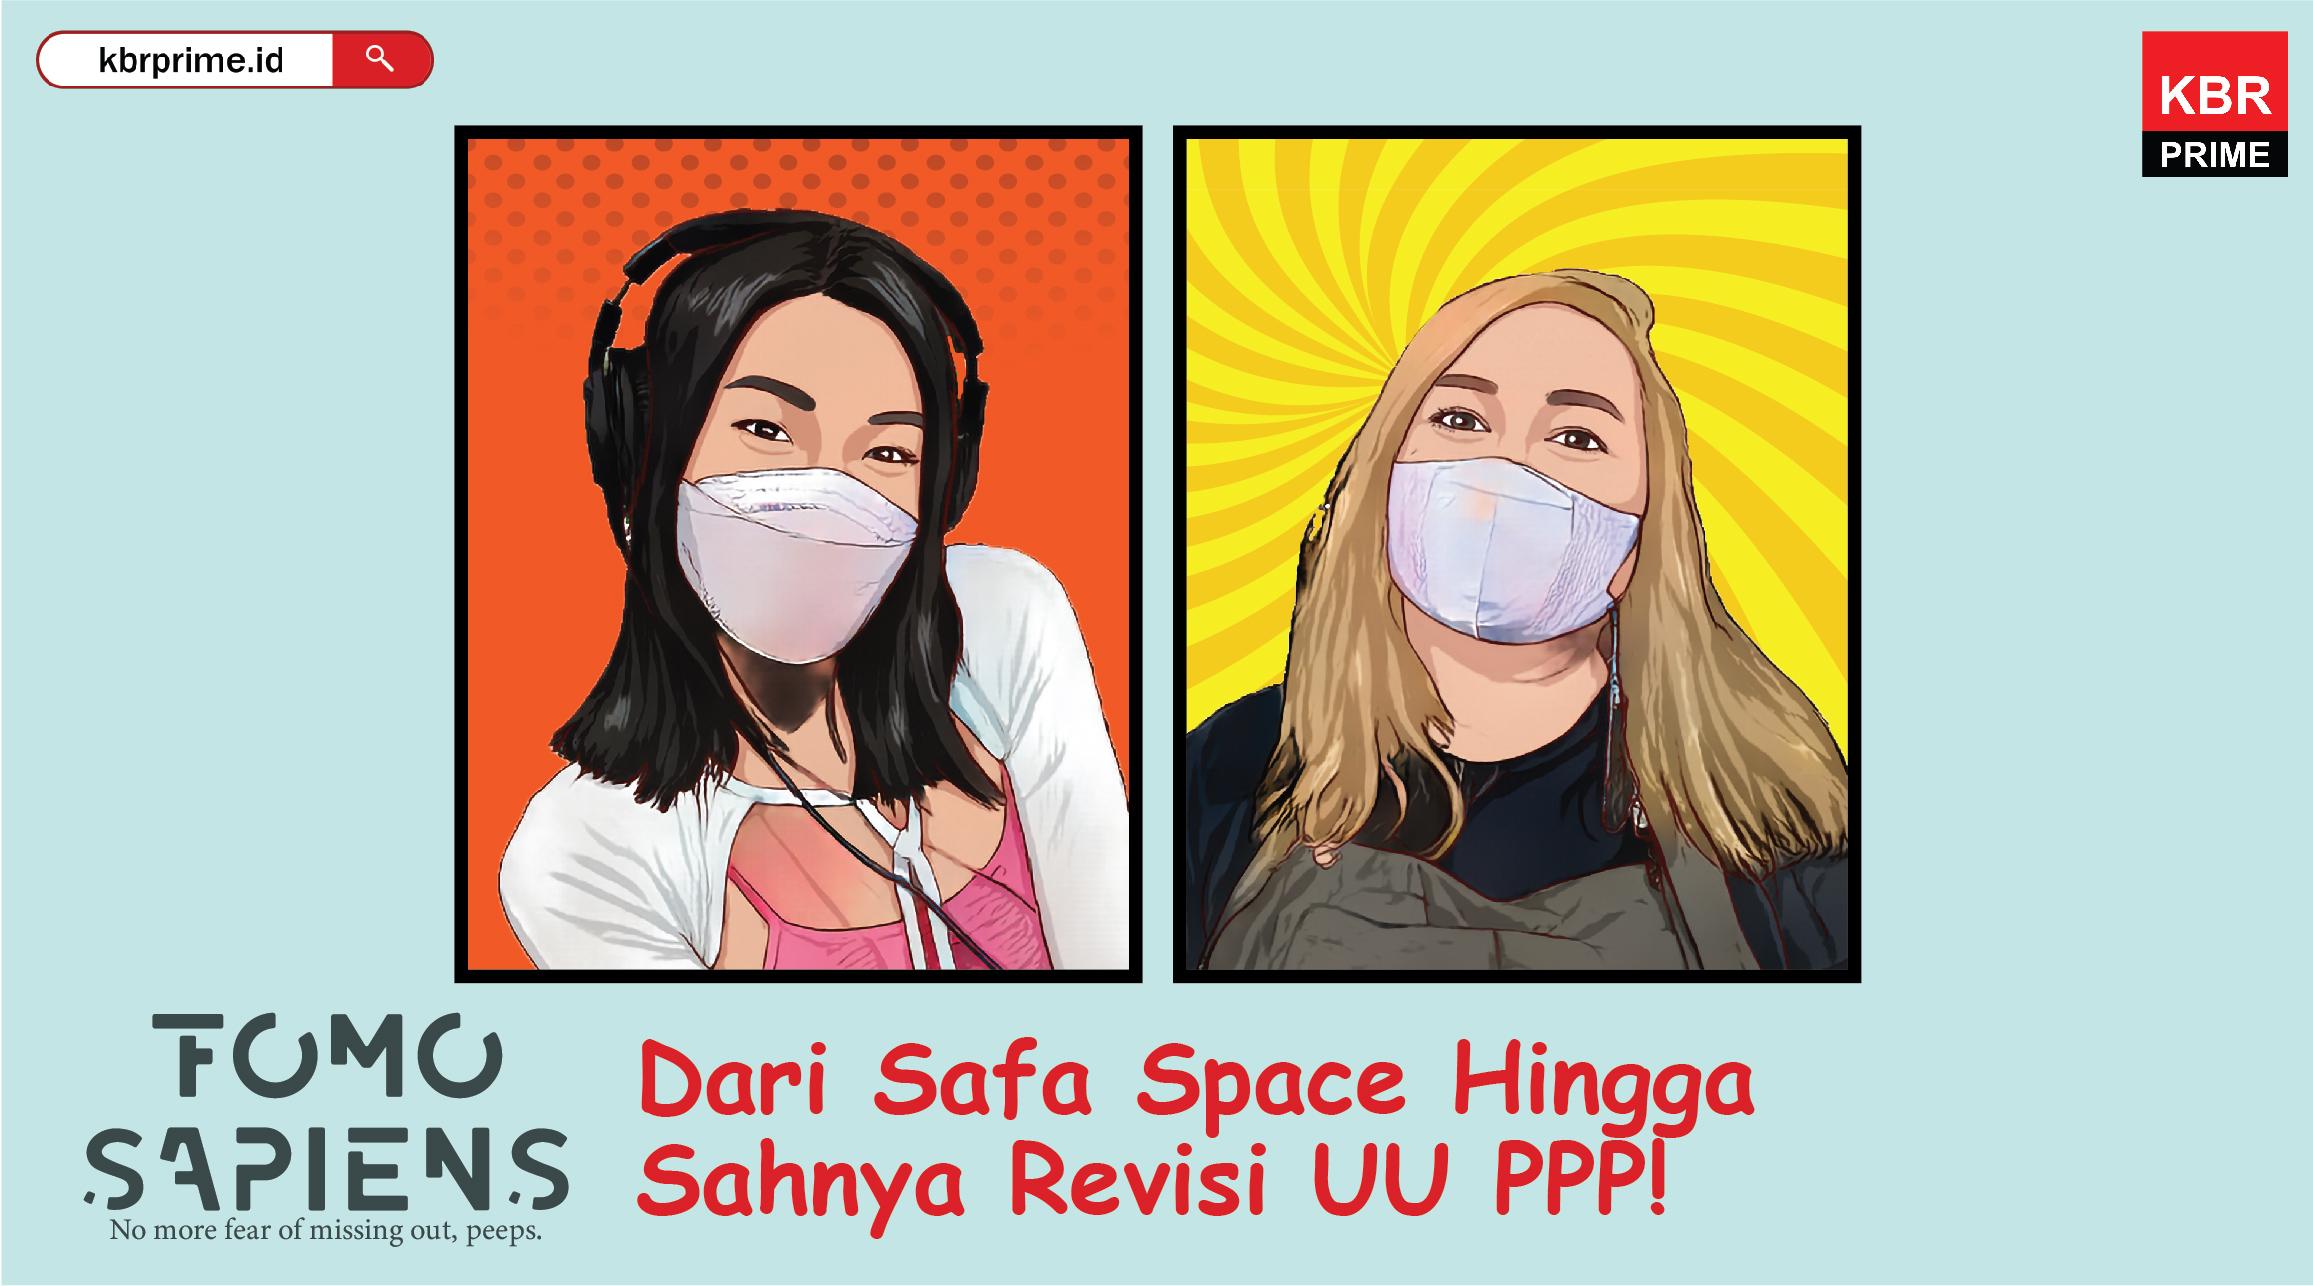 FOMO Sapiens : Dari Safa Space dan Fanatisme Idola Hingga Sahnya Revisi UU PPP